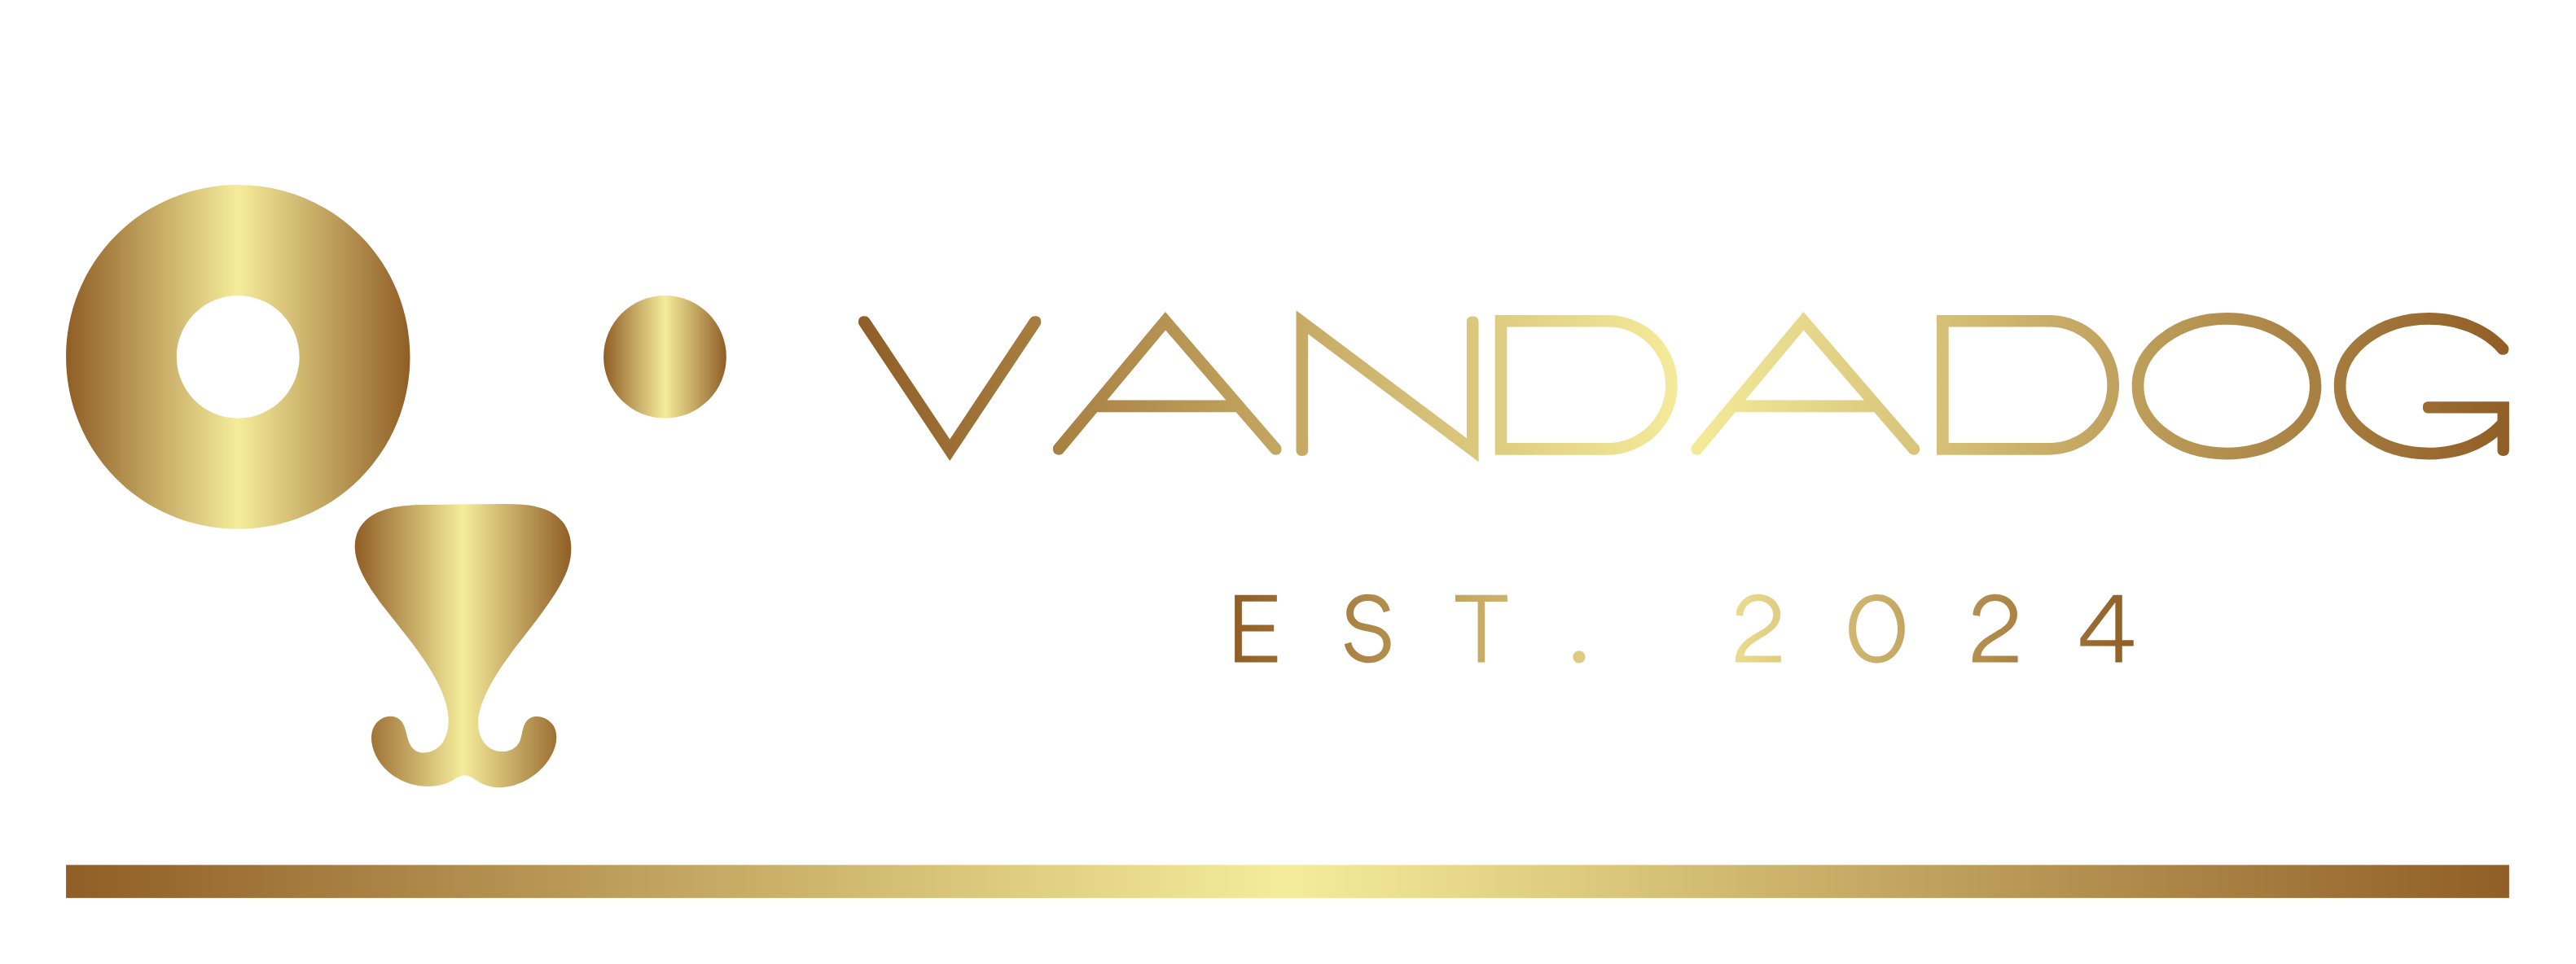 www.vandadog.com